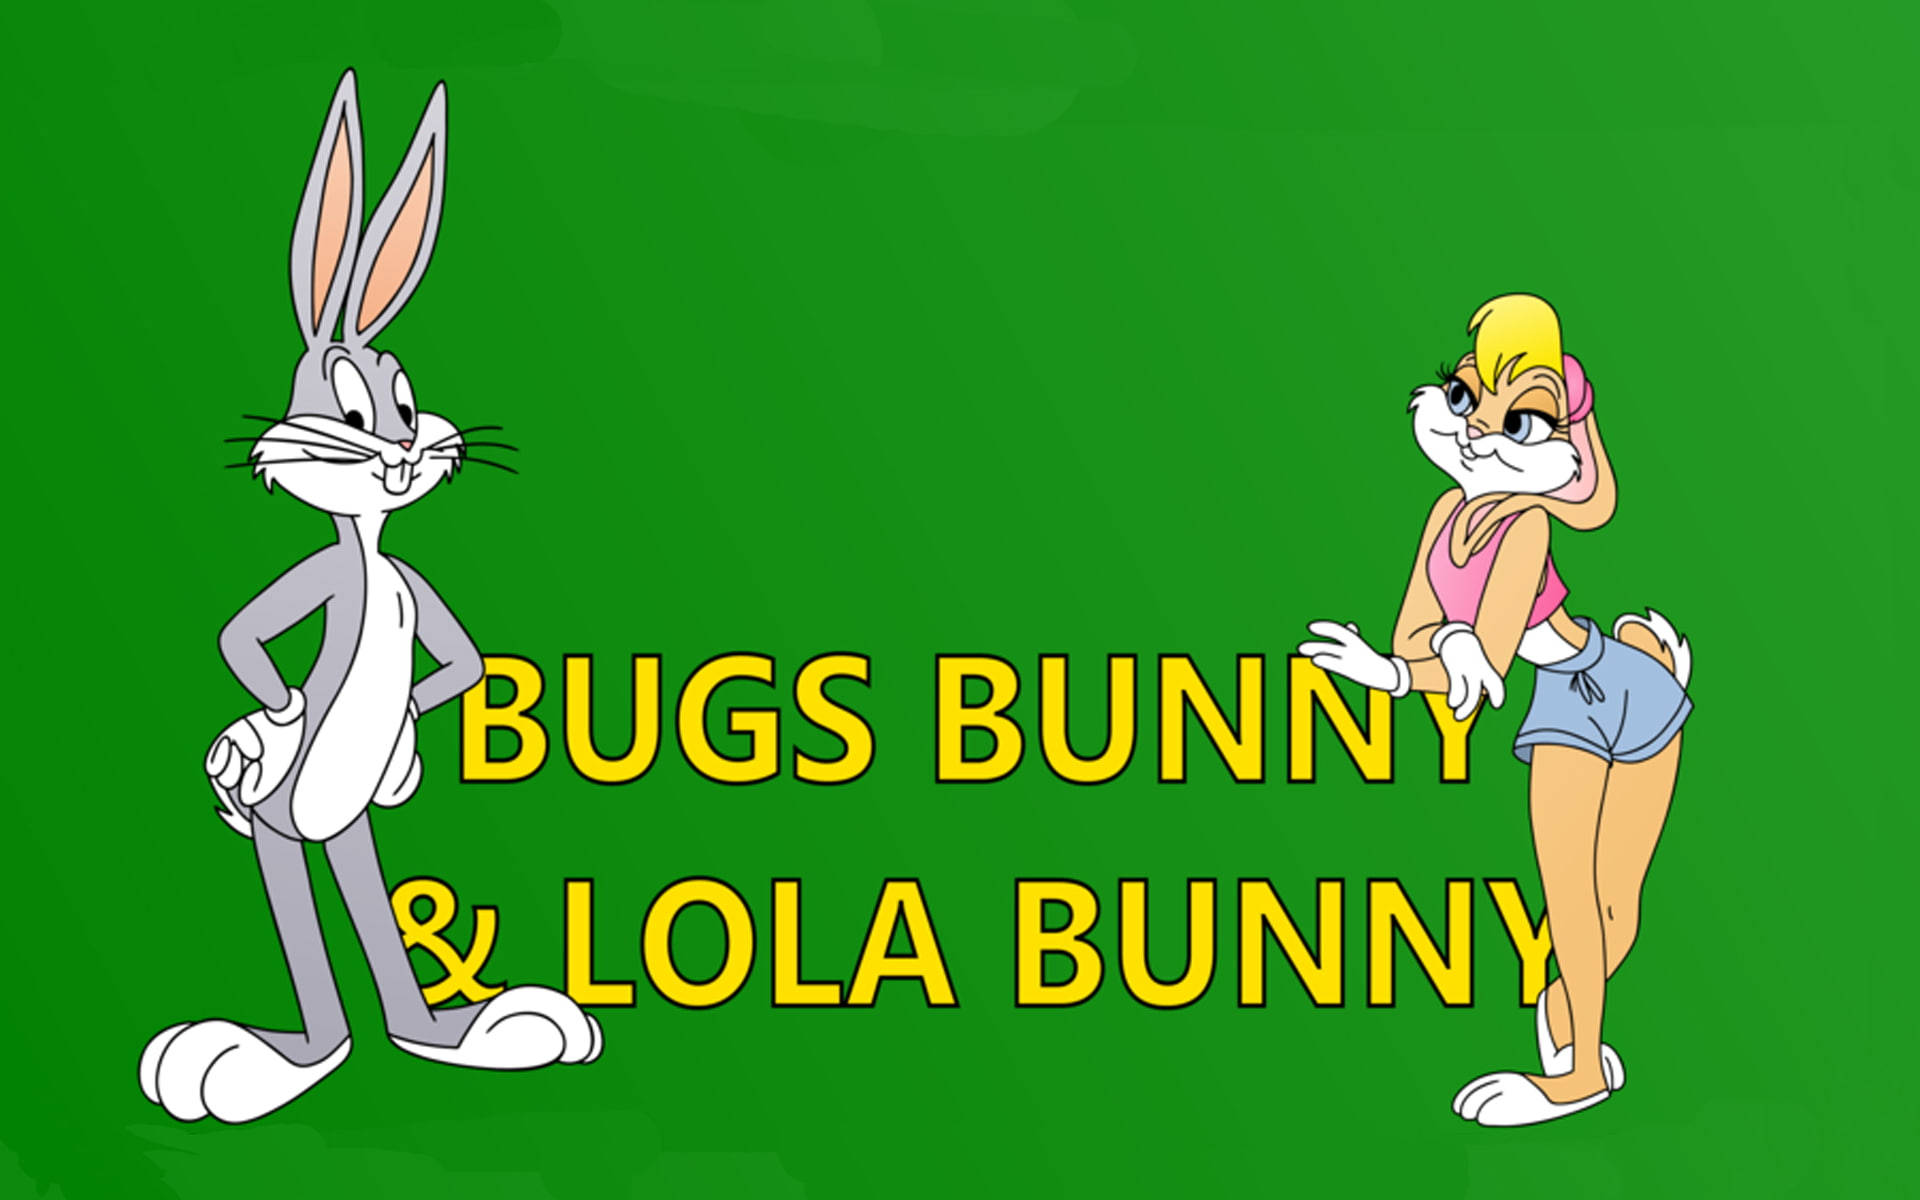 Lolabunny E Bugs Bunny Verde - Papel De Parede De Computador Ou Celular. Papel de Parede